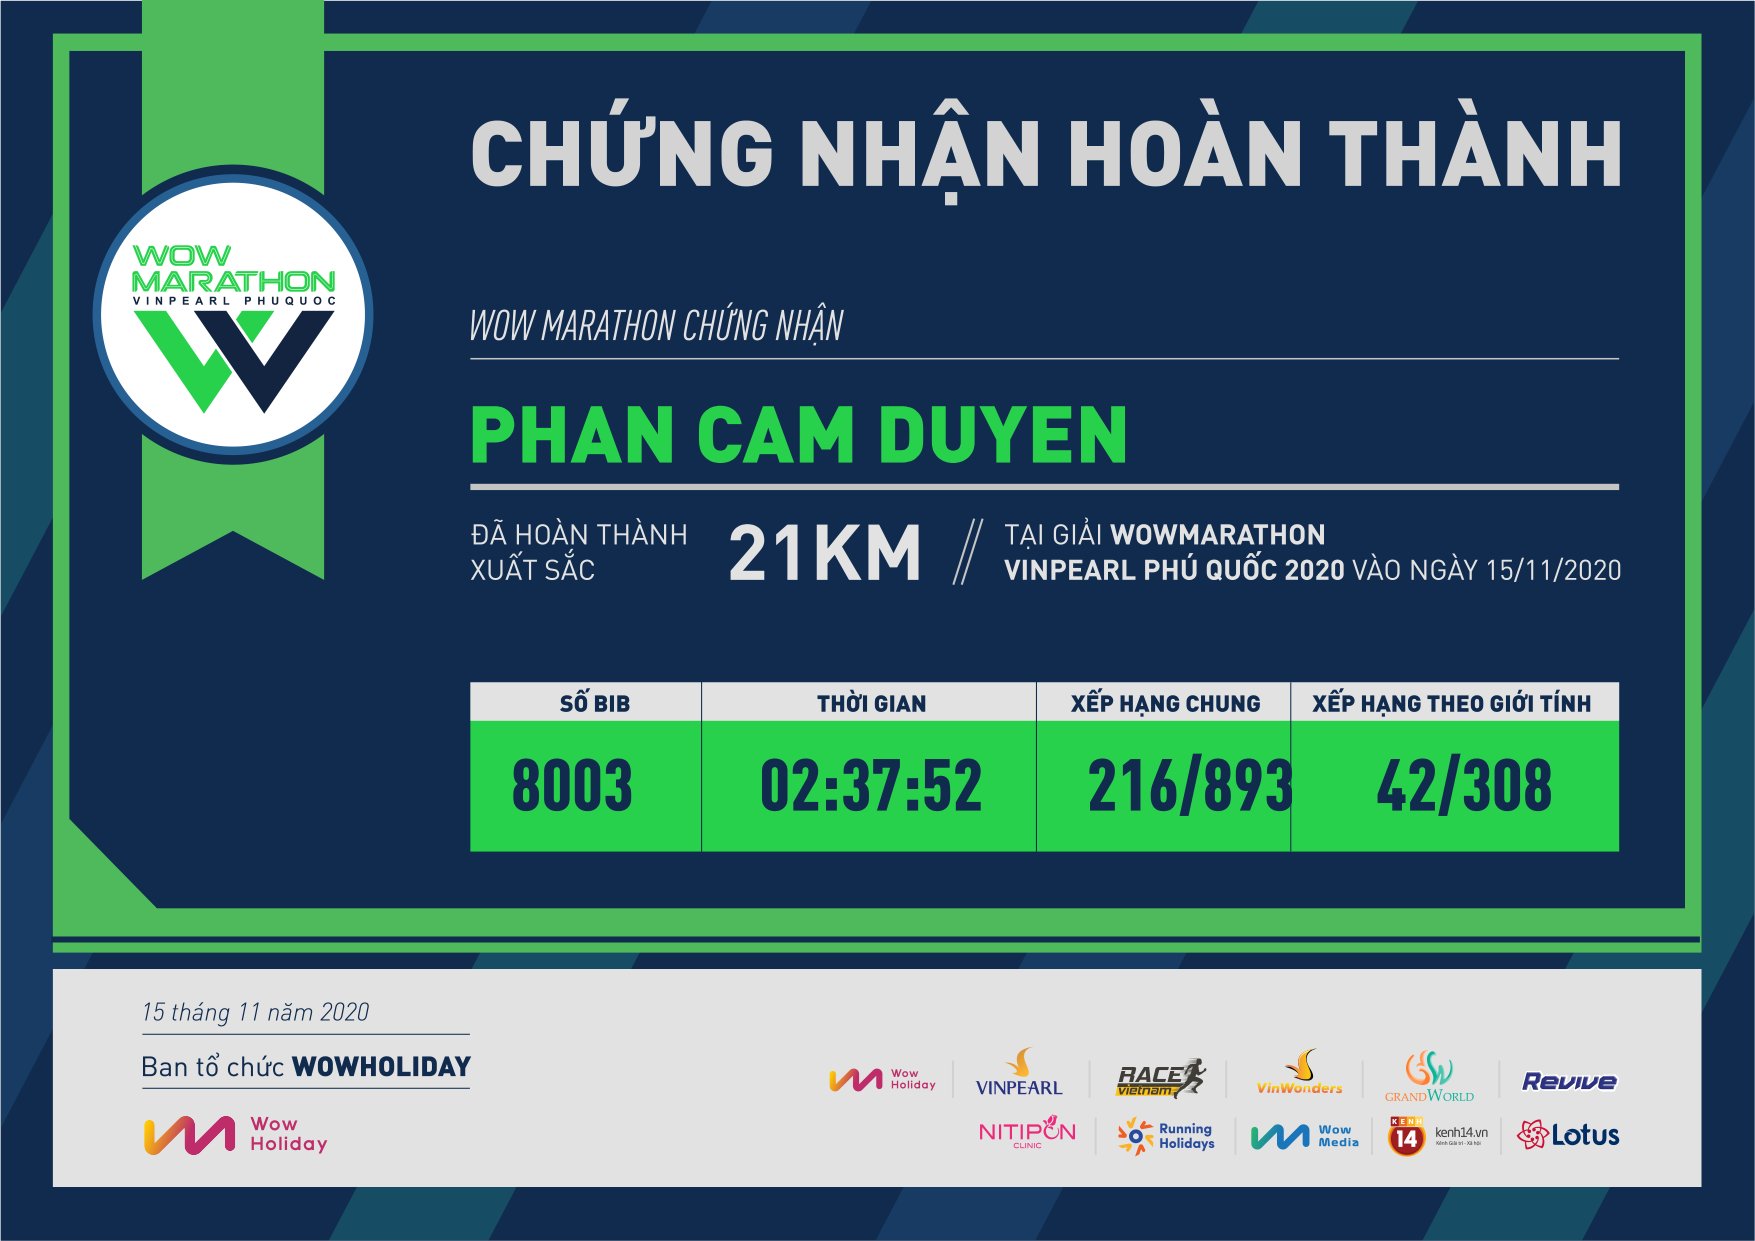 8003 - Phan Cam Duyen